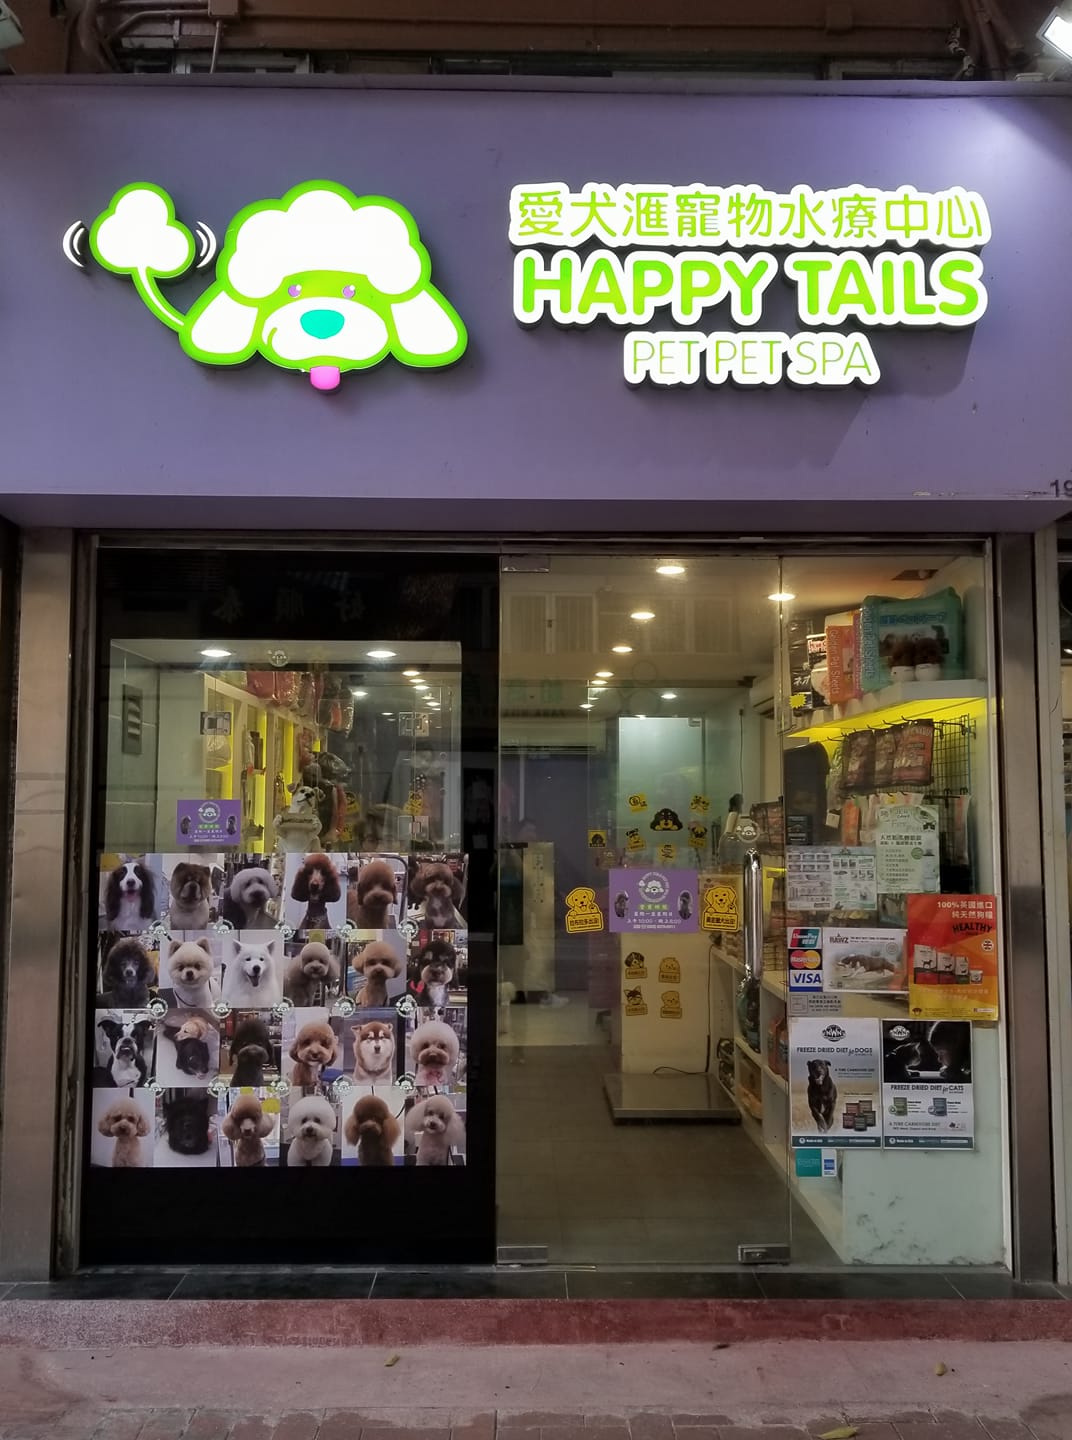 Happy Tails pet pet spa 愛犬滙寵物水療中心